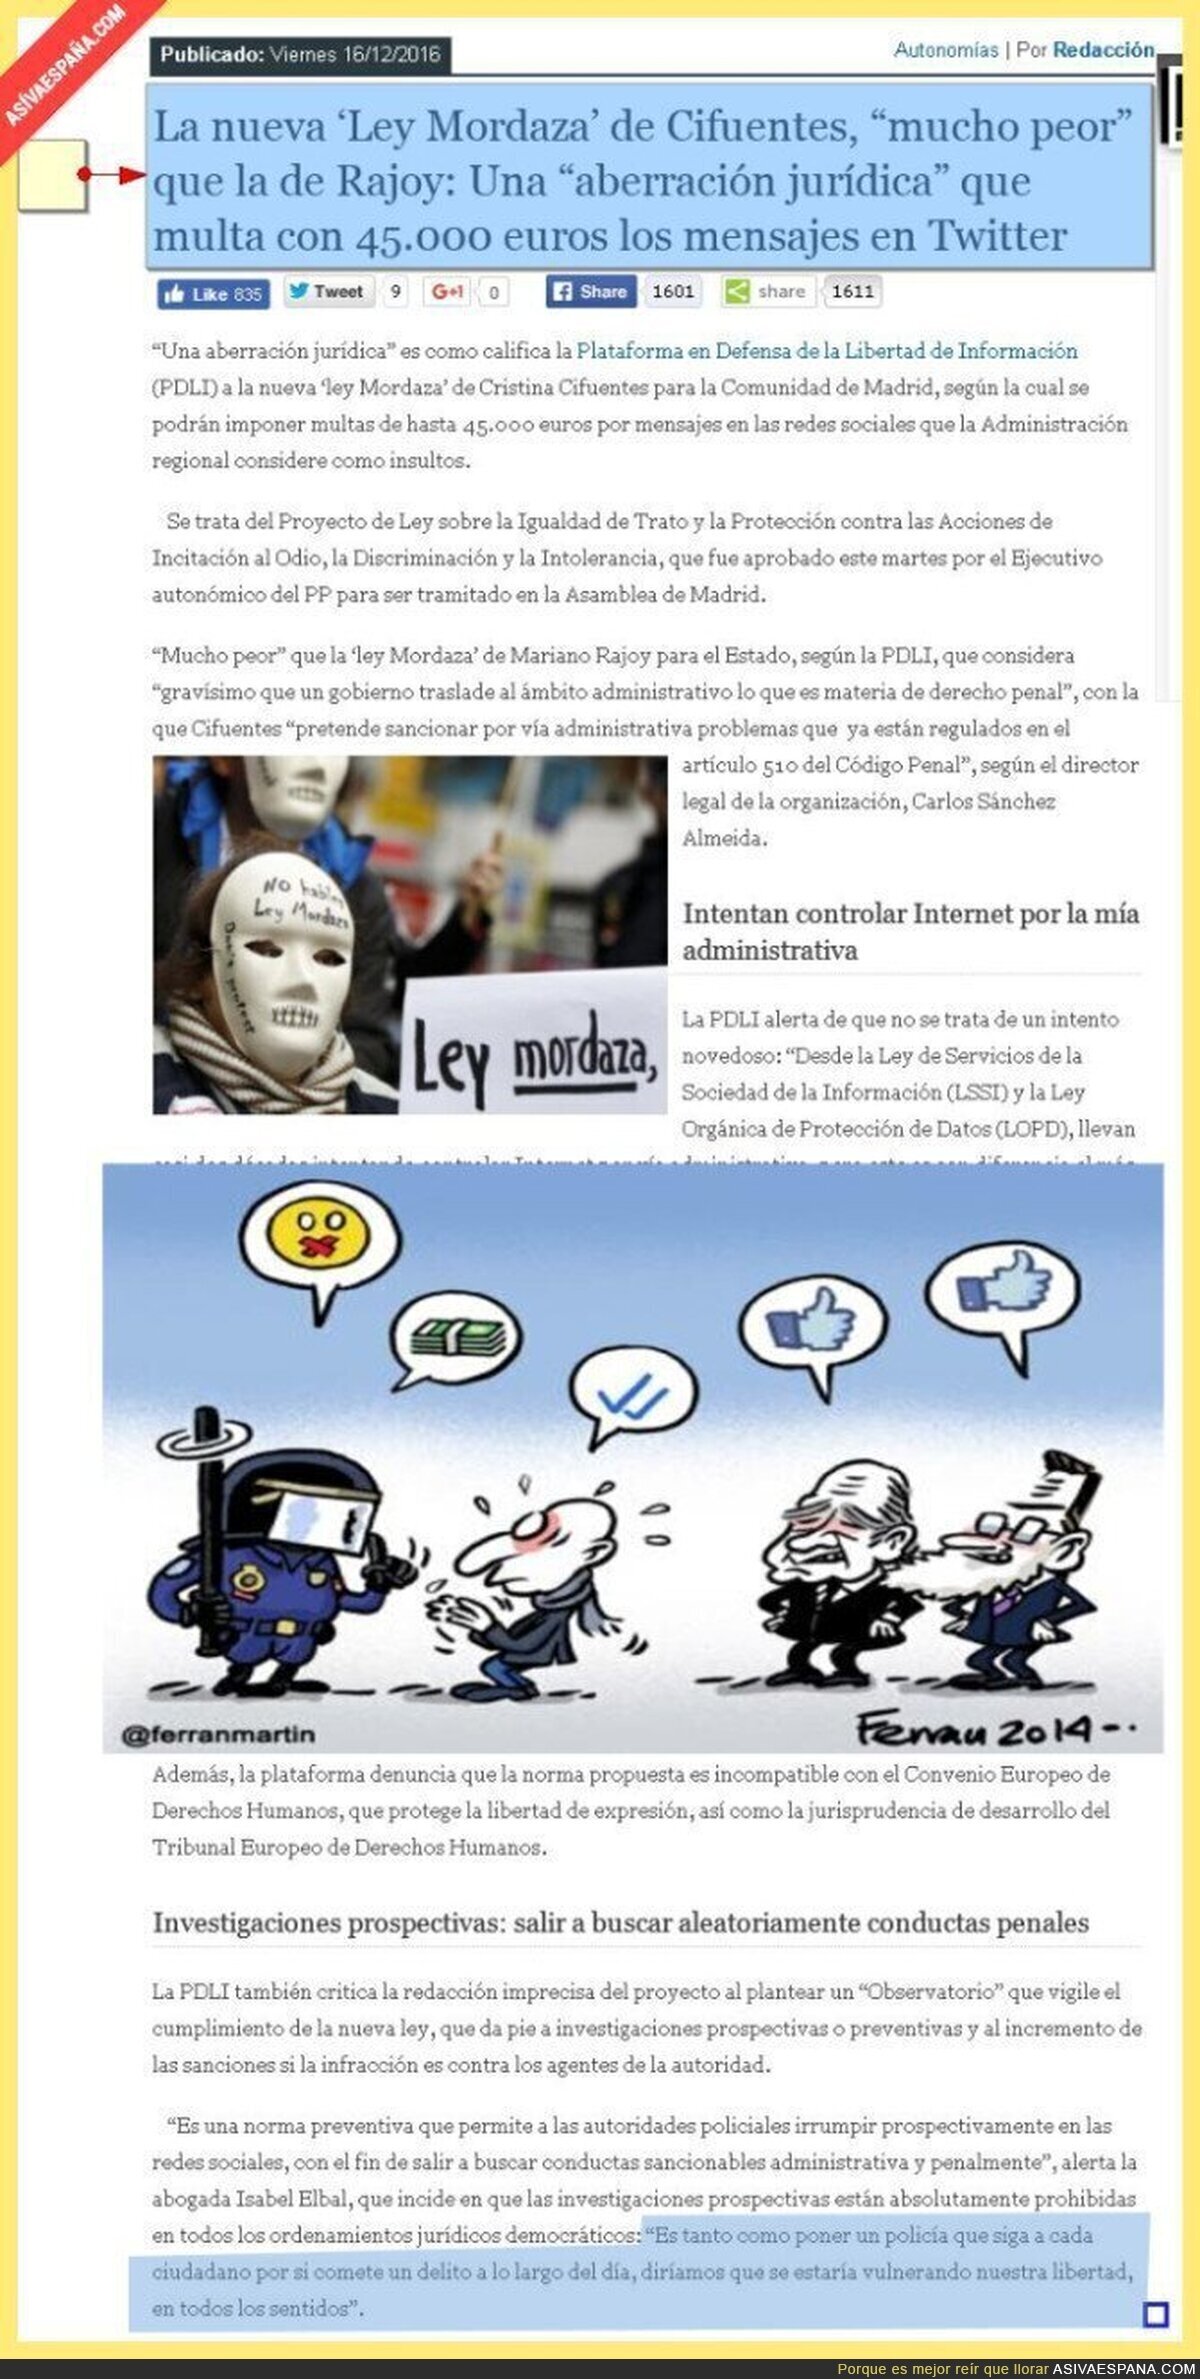 La nueva ‘Ley Mordaza’ de Cifuentes, “mucho peor” que la de Rajoy